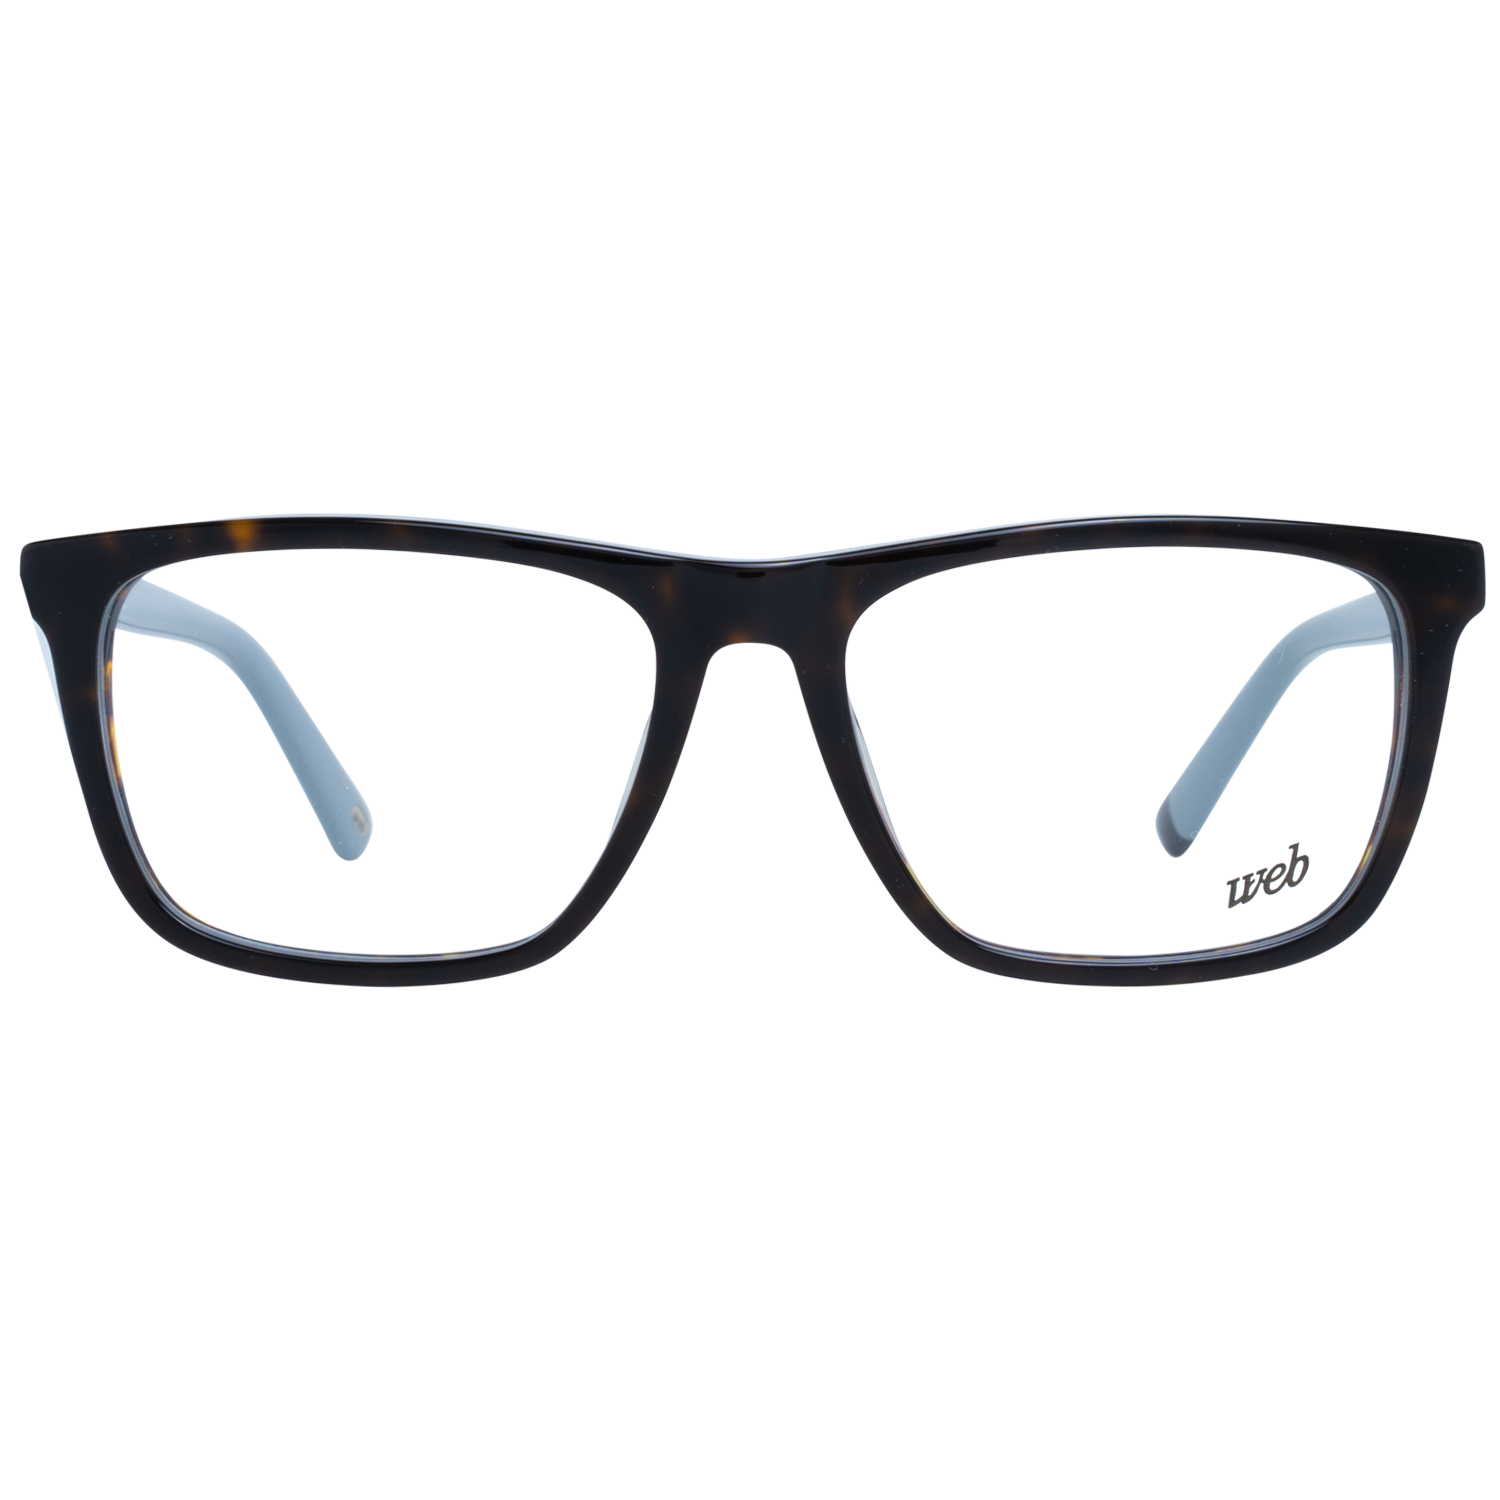 Web Frames Web Glasses Optical Frame WE5261 056 54 Eyeglasses Eyewear UK USA Australia 